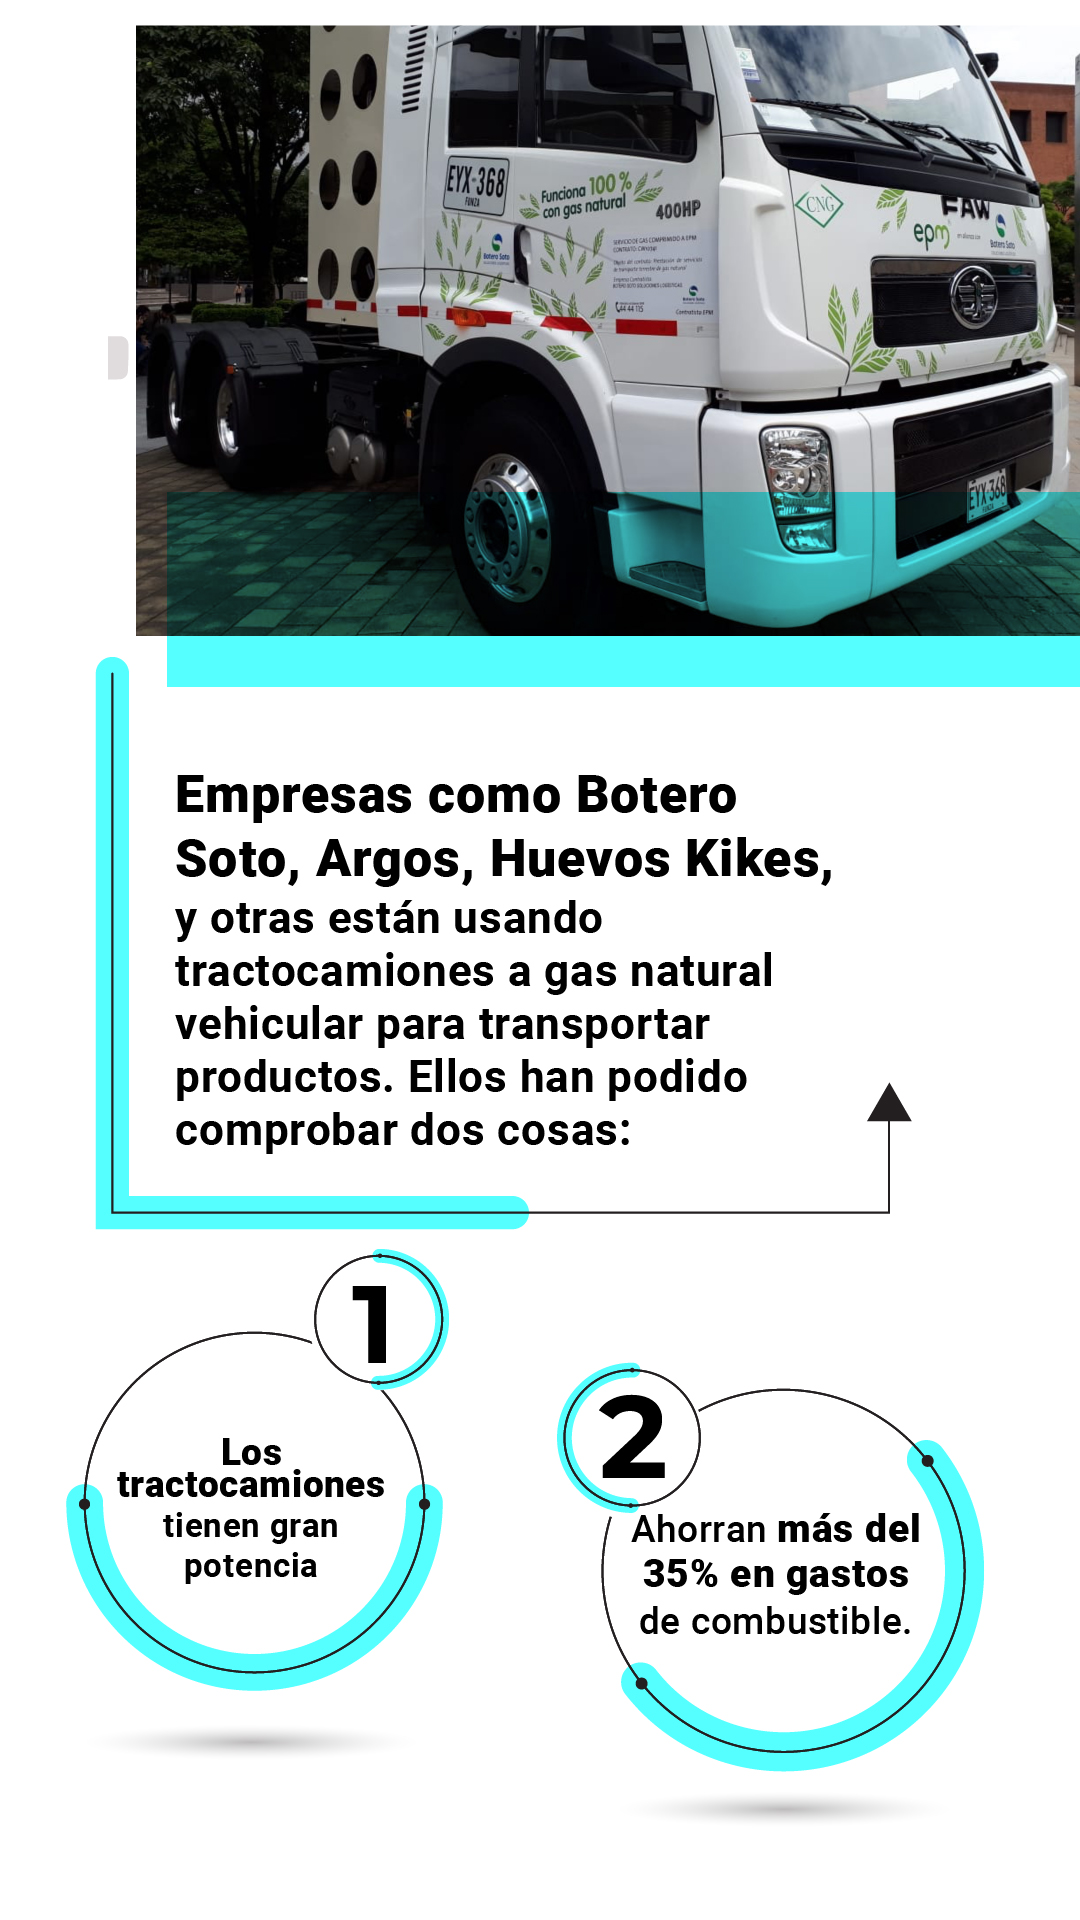 Desde que don Jorge convirtió su camión a gas natural vehicular, y atraviesa las montañas colombianas